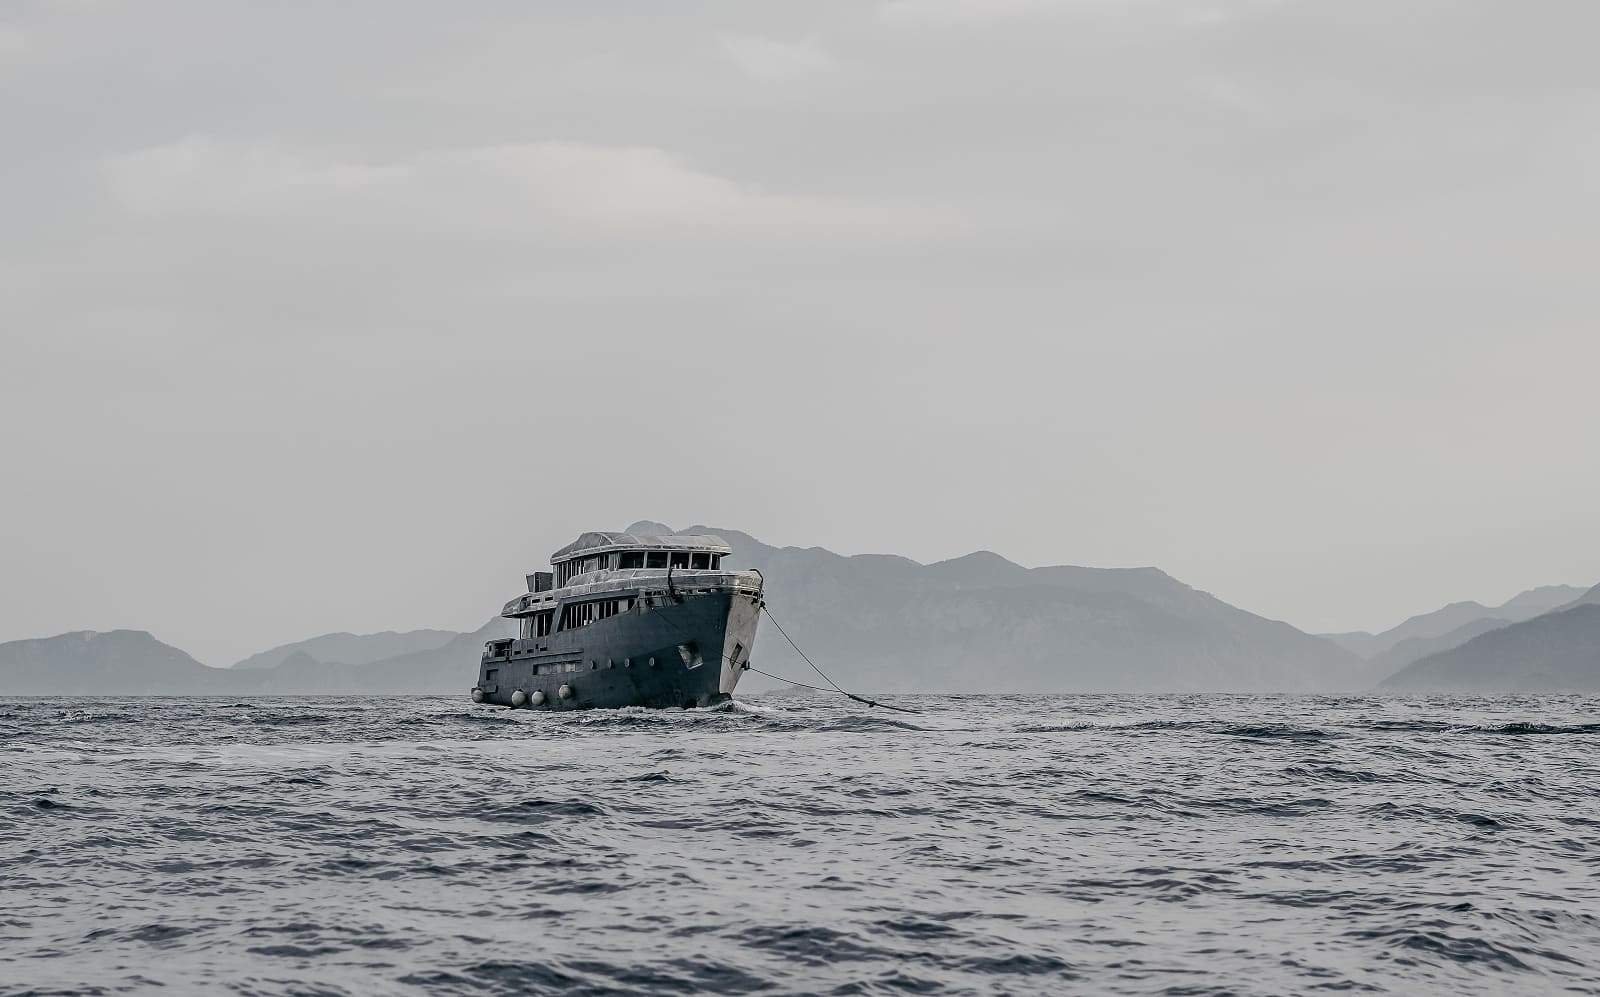 Bering 125: the hull arrived in Antalya